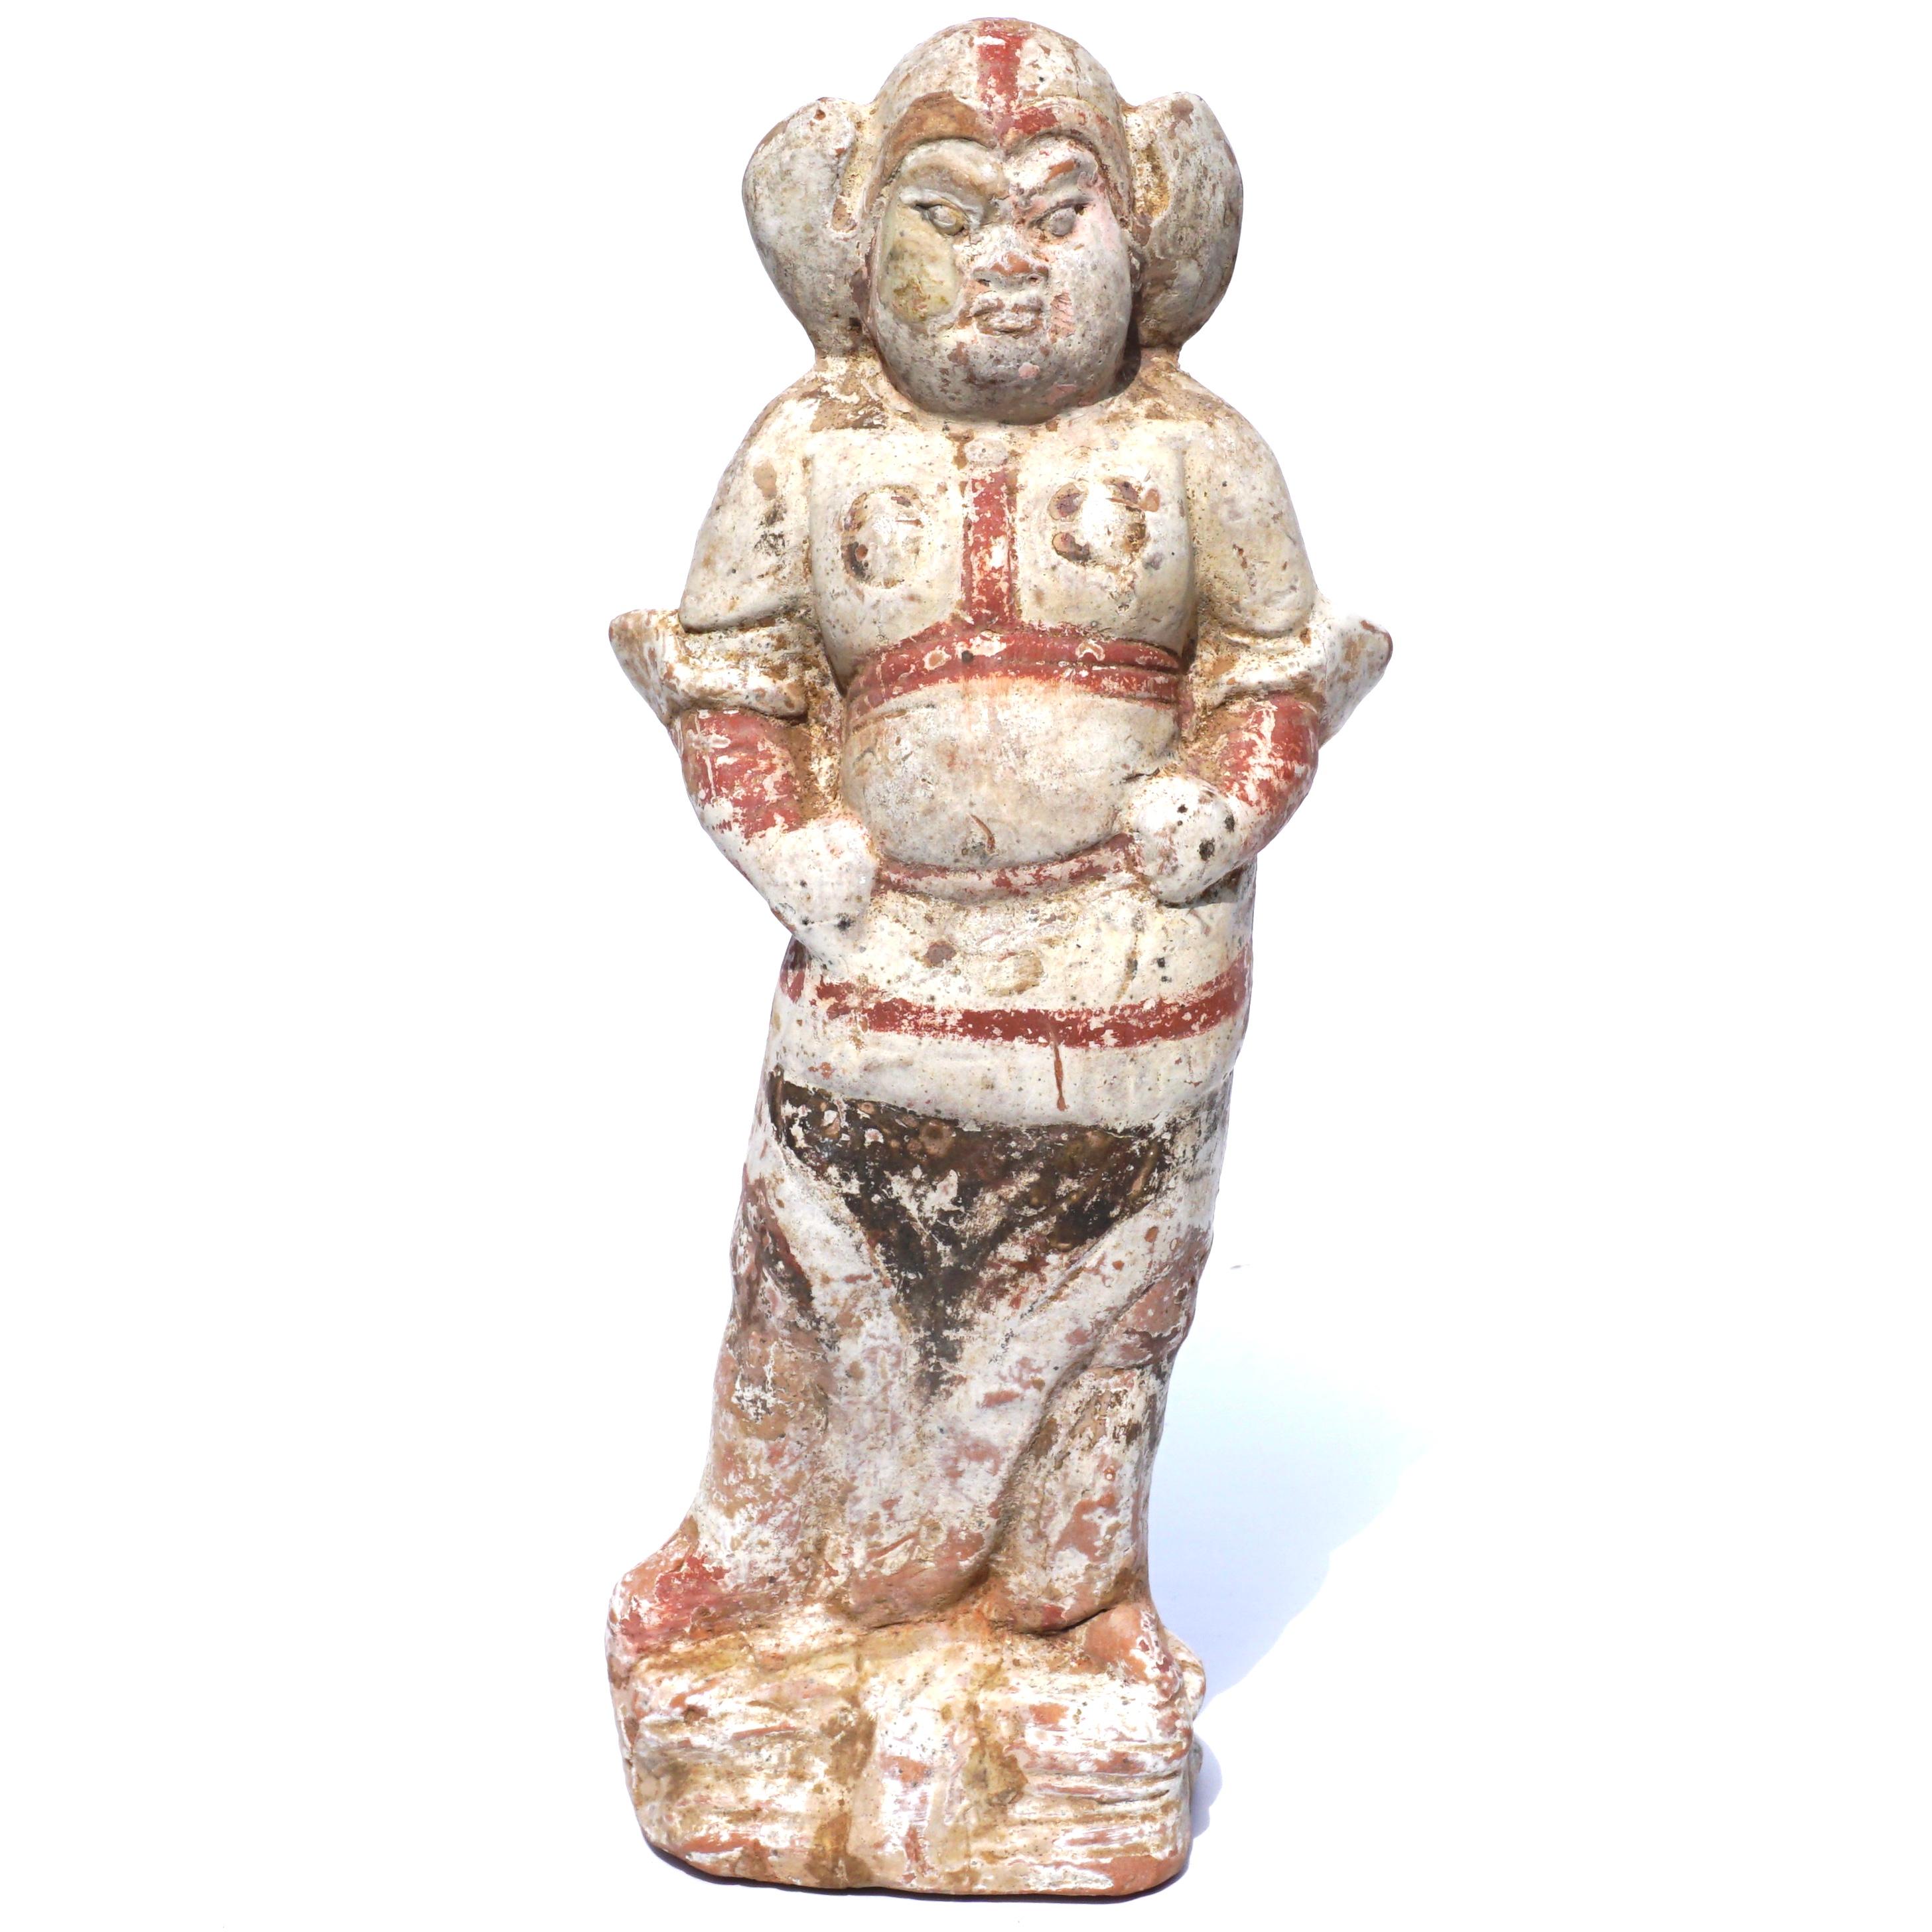 Magnifique figurine tombale en poterie chinoise d'argile rouge de la dynastie Tang (618 à 907). Gardant un dignitaire ou un soldat décoré, ces figures ont monté la garde pendant plus d'un millier d'années, survivant pour décorer la collection